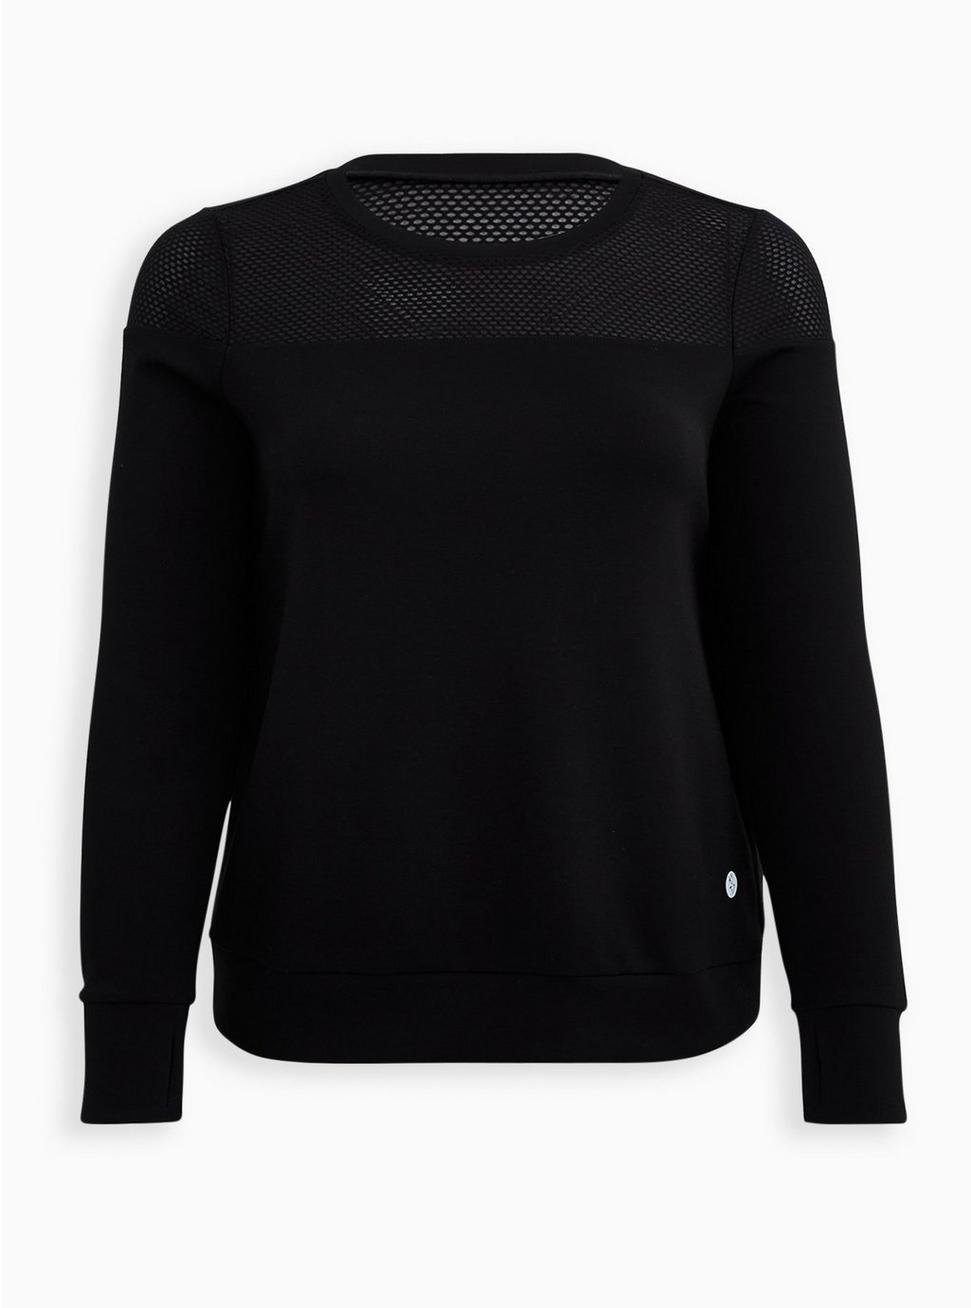 Plus Size - Black Cupro & Mesh Active Sweatshirt - Torrid